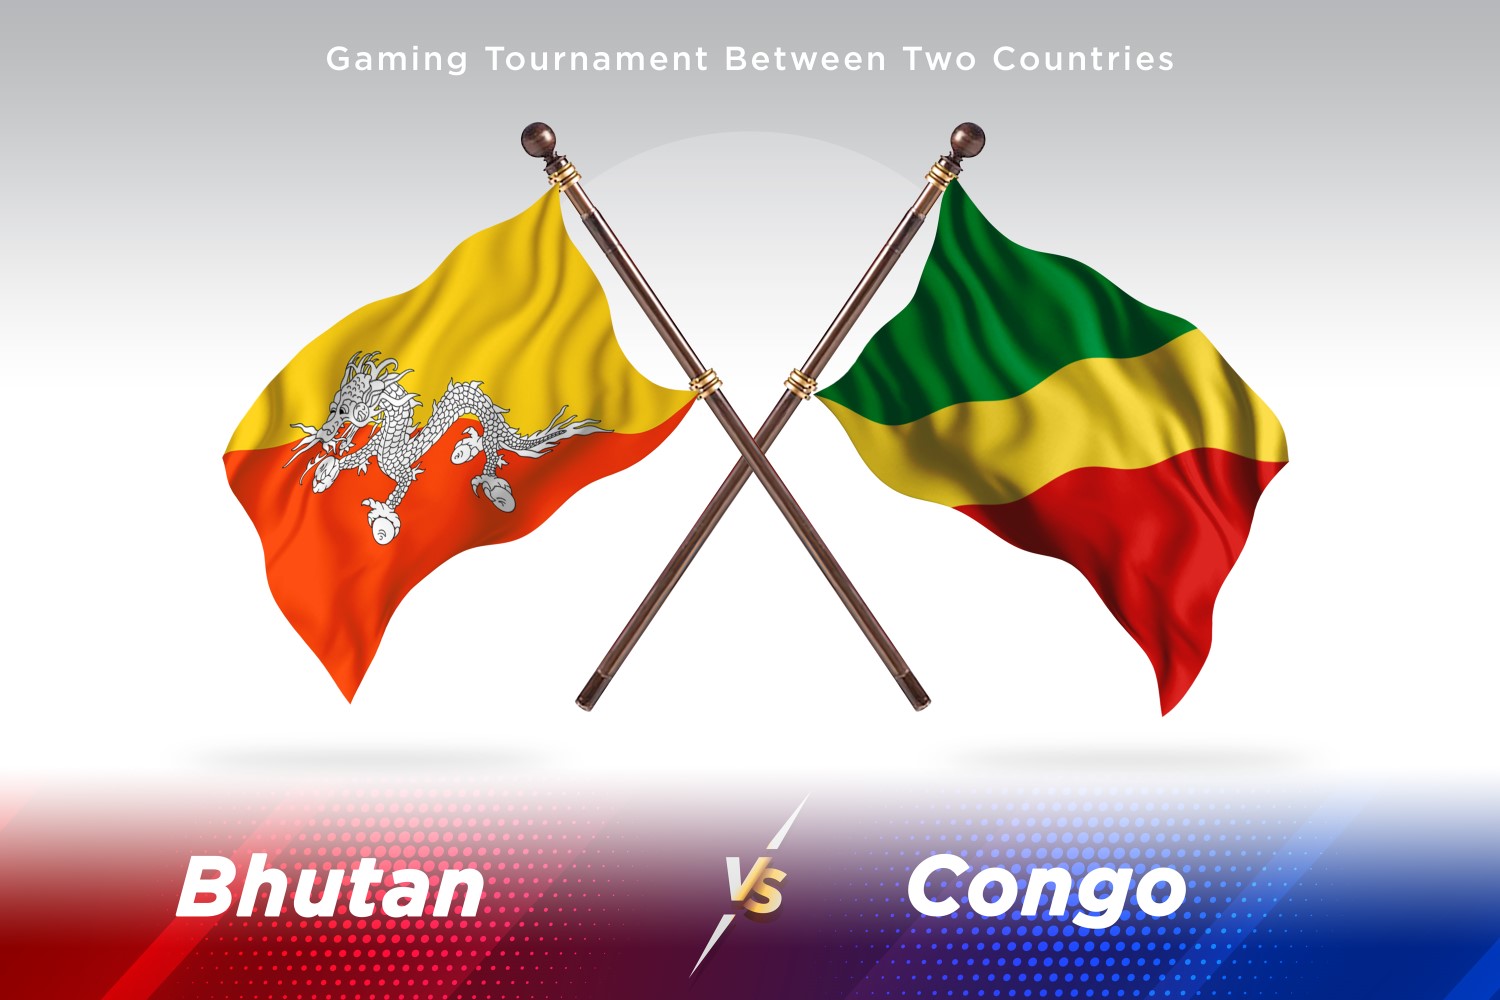 Bhutan versus Congo Two Flags